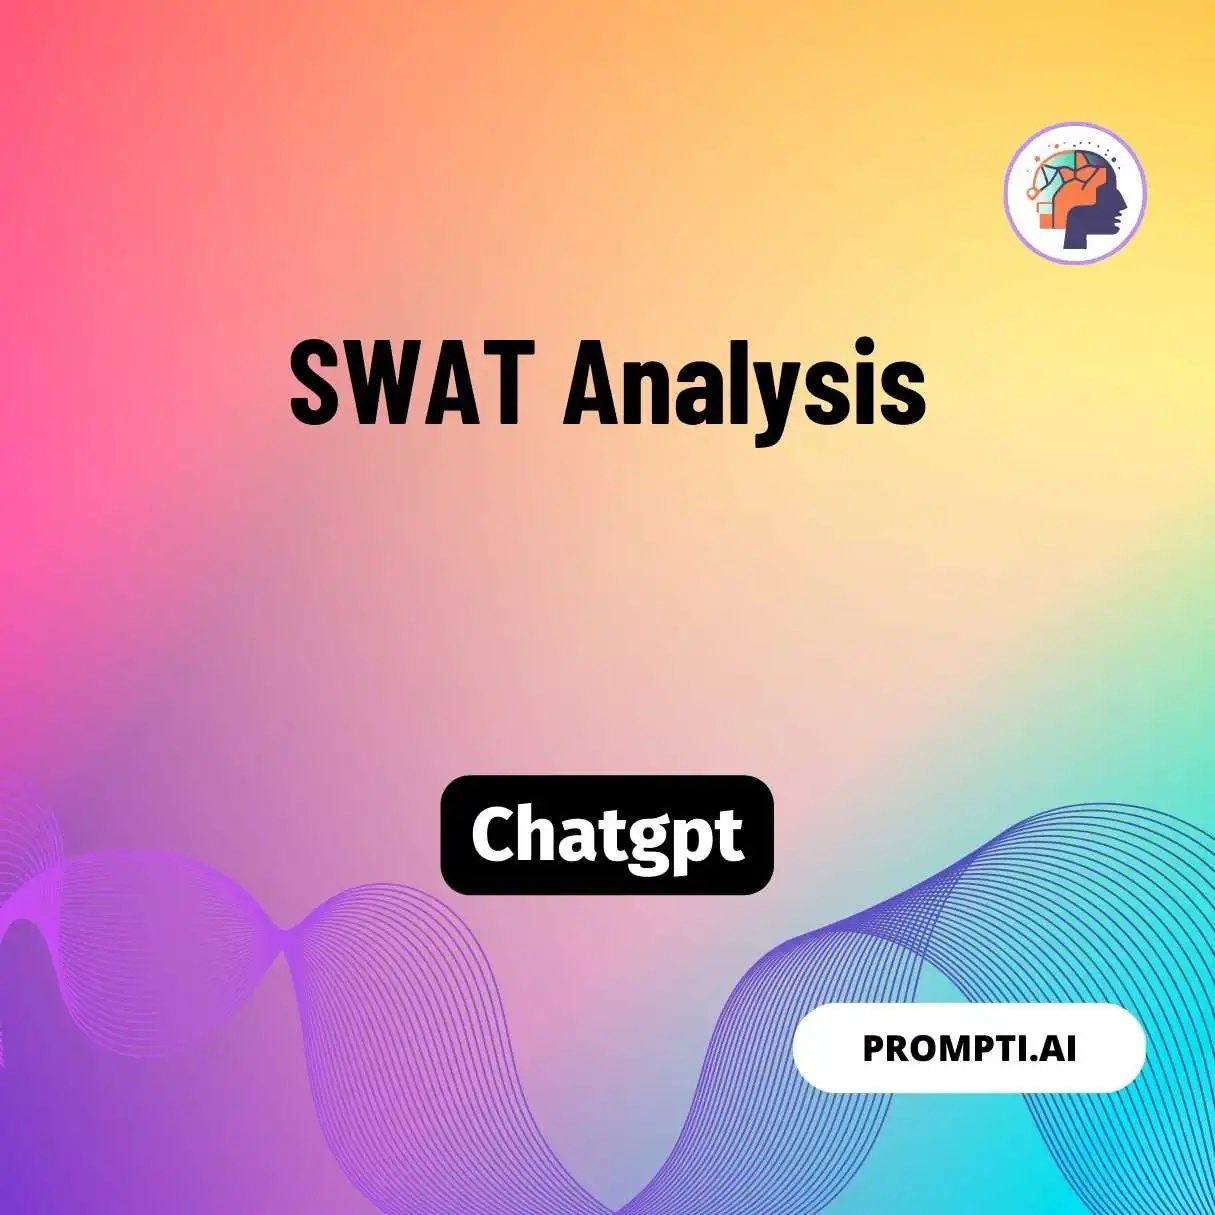 SWAT Analysis